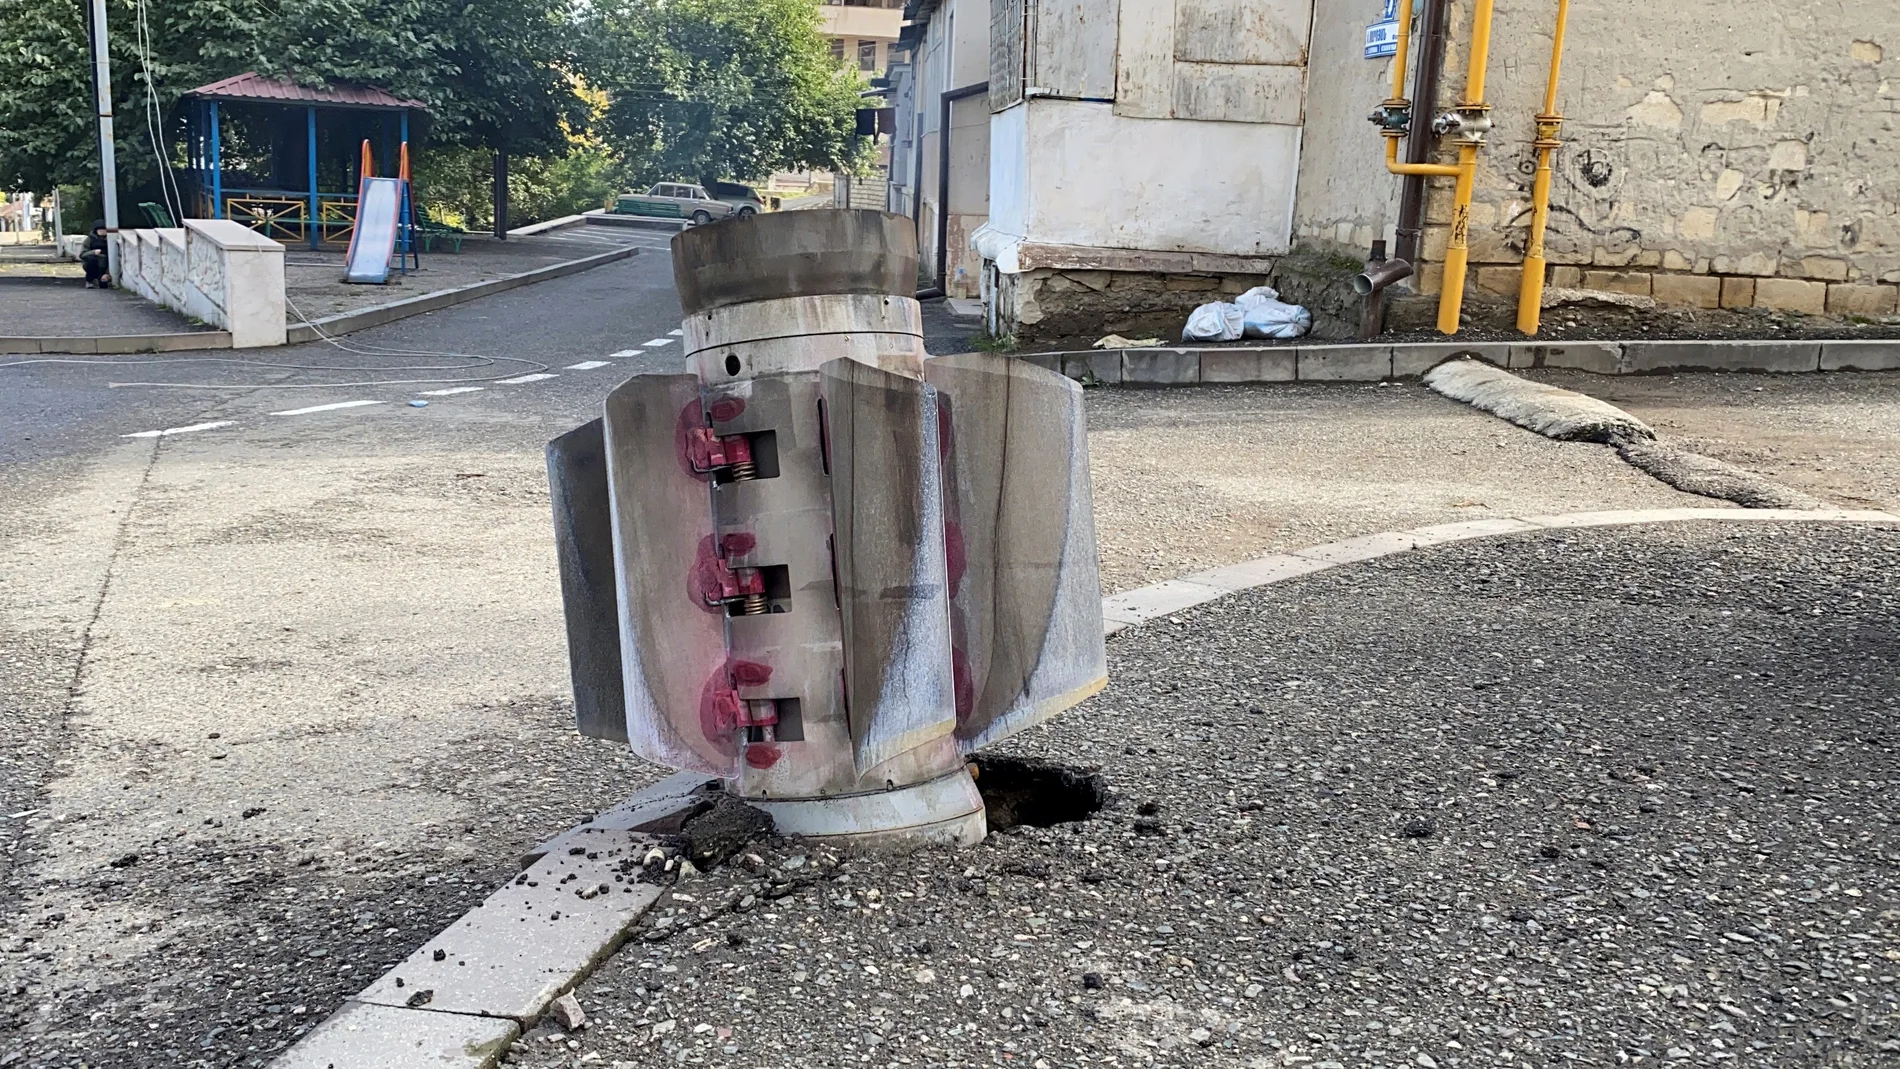 Imagen de archvi de un cohete no explotado en la capital de Nagorno Karabaj, Stepanakert, en octubre de 2020